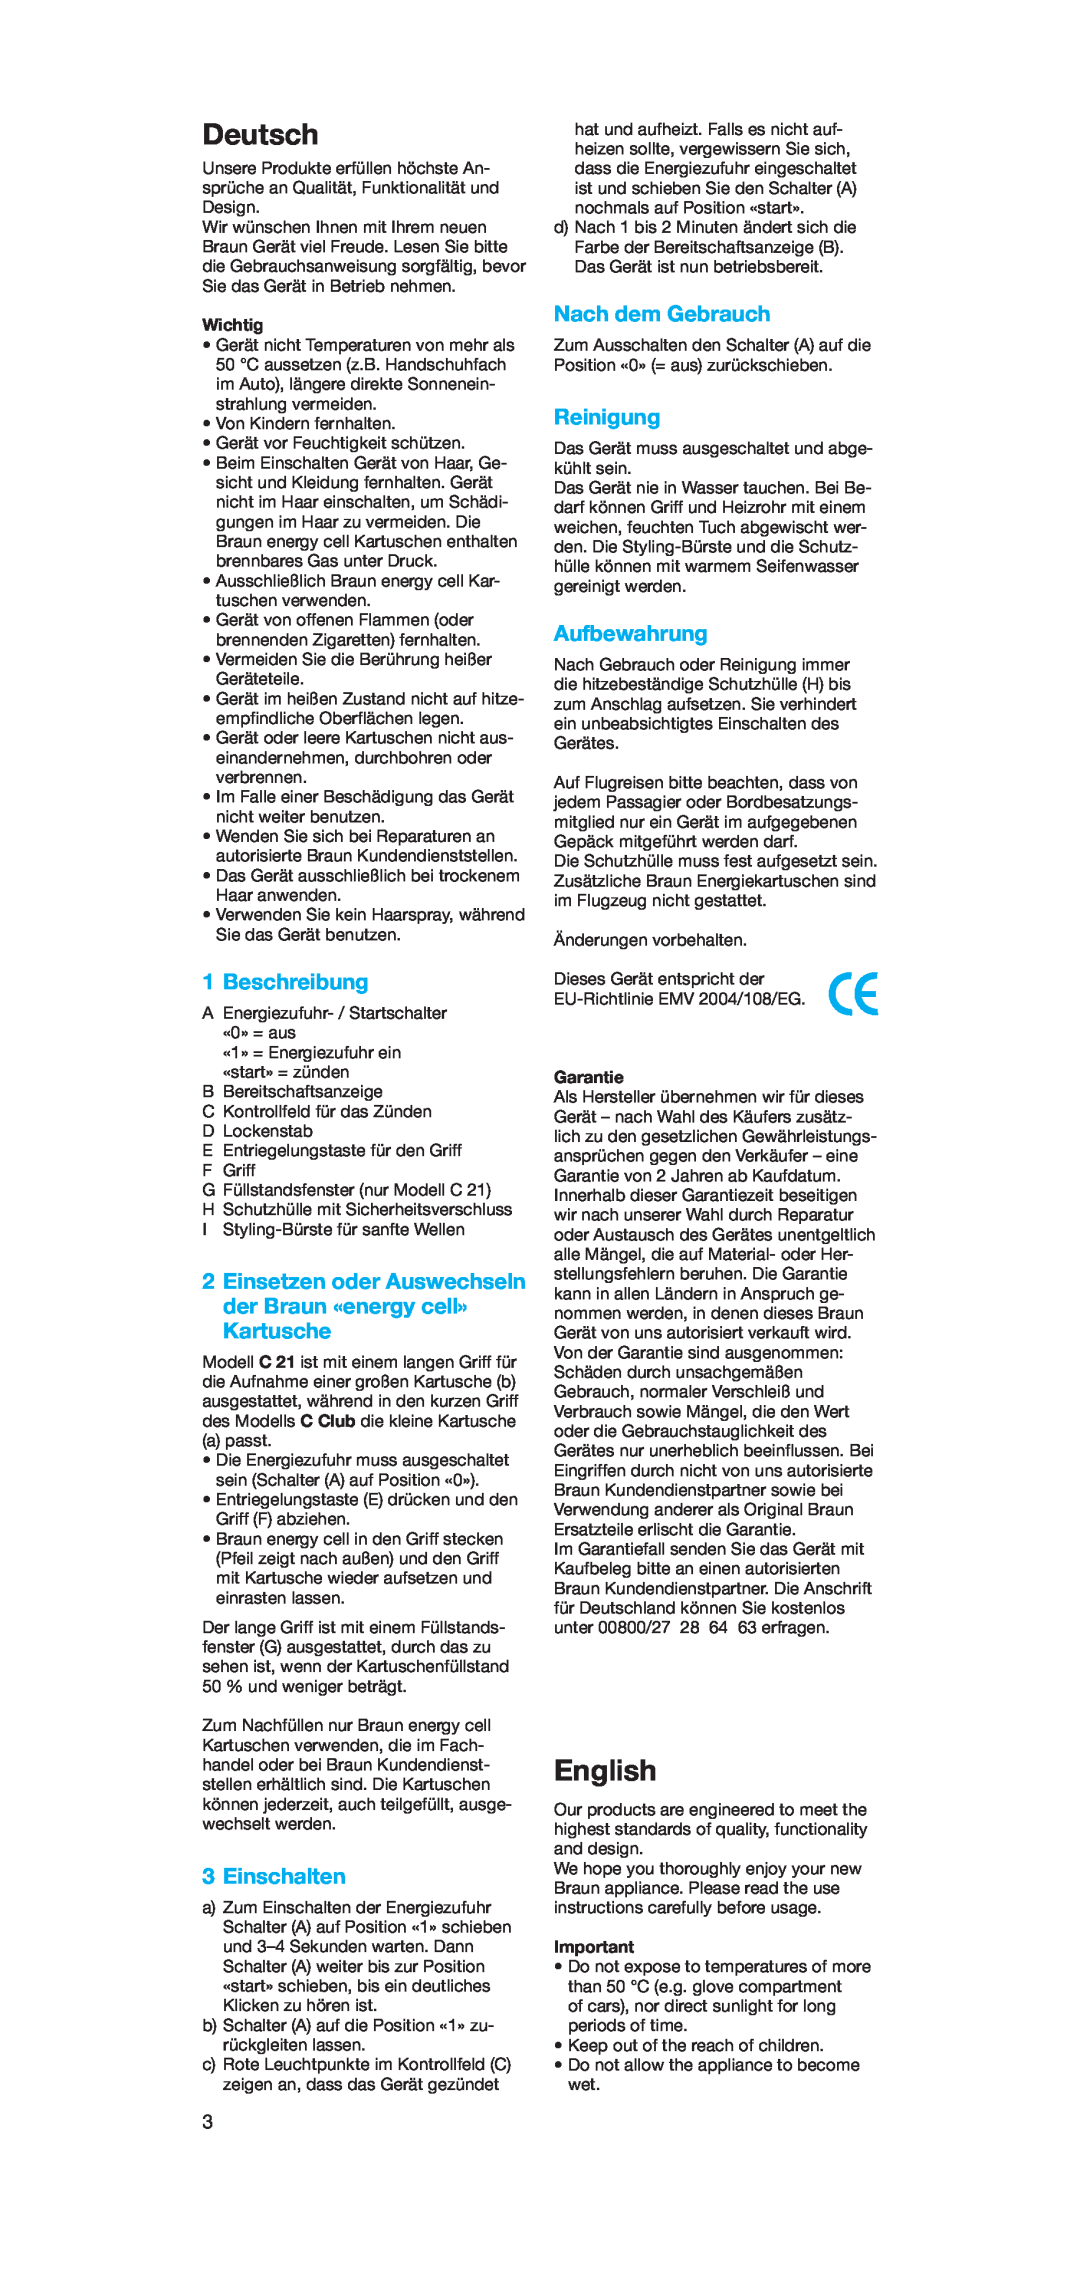 Braun C 21 manual Deutsch, English, Beschreibung, Einsetzen oder Auswechseln der Braun «energy cell» Kartusche, Einschalten 